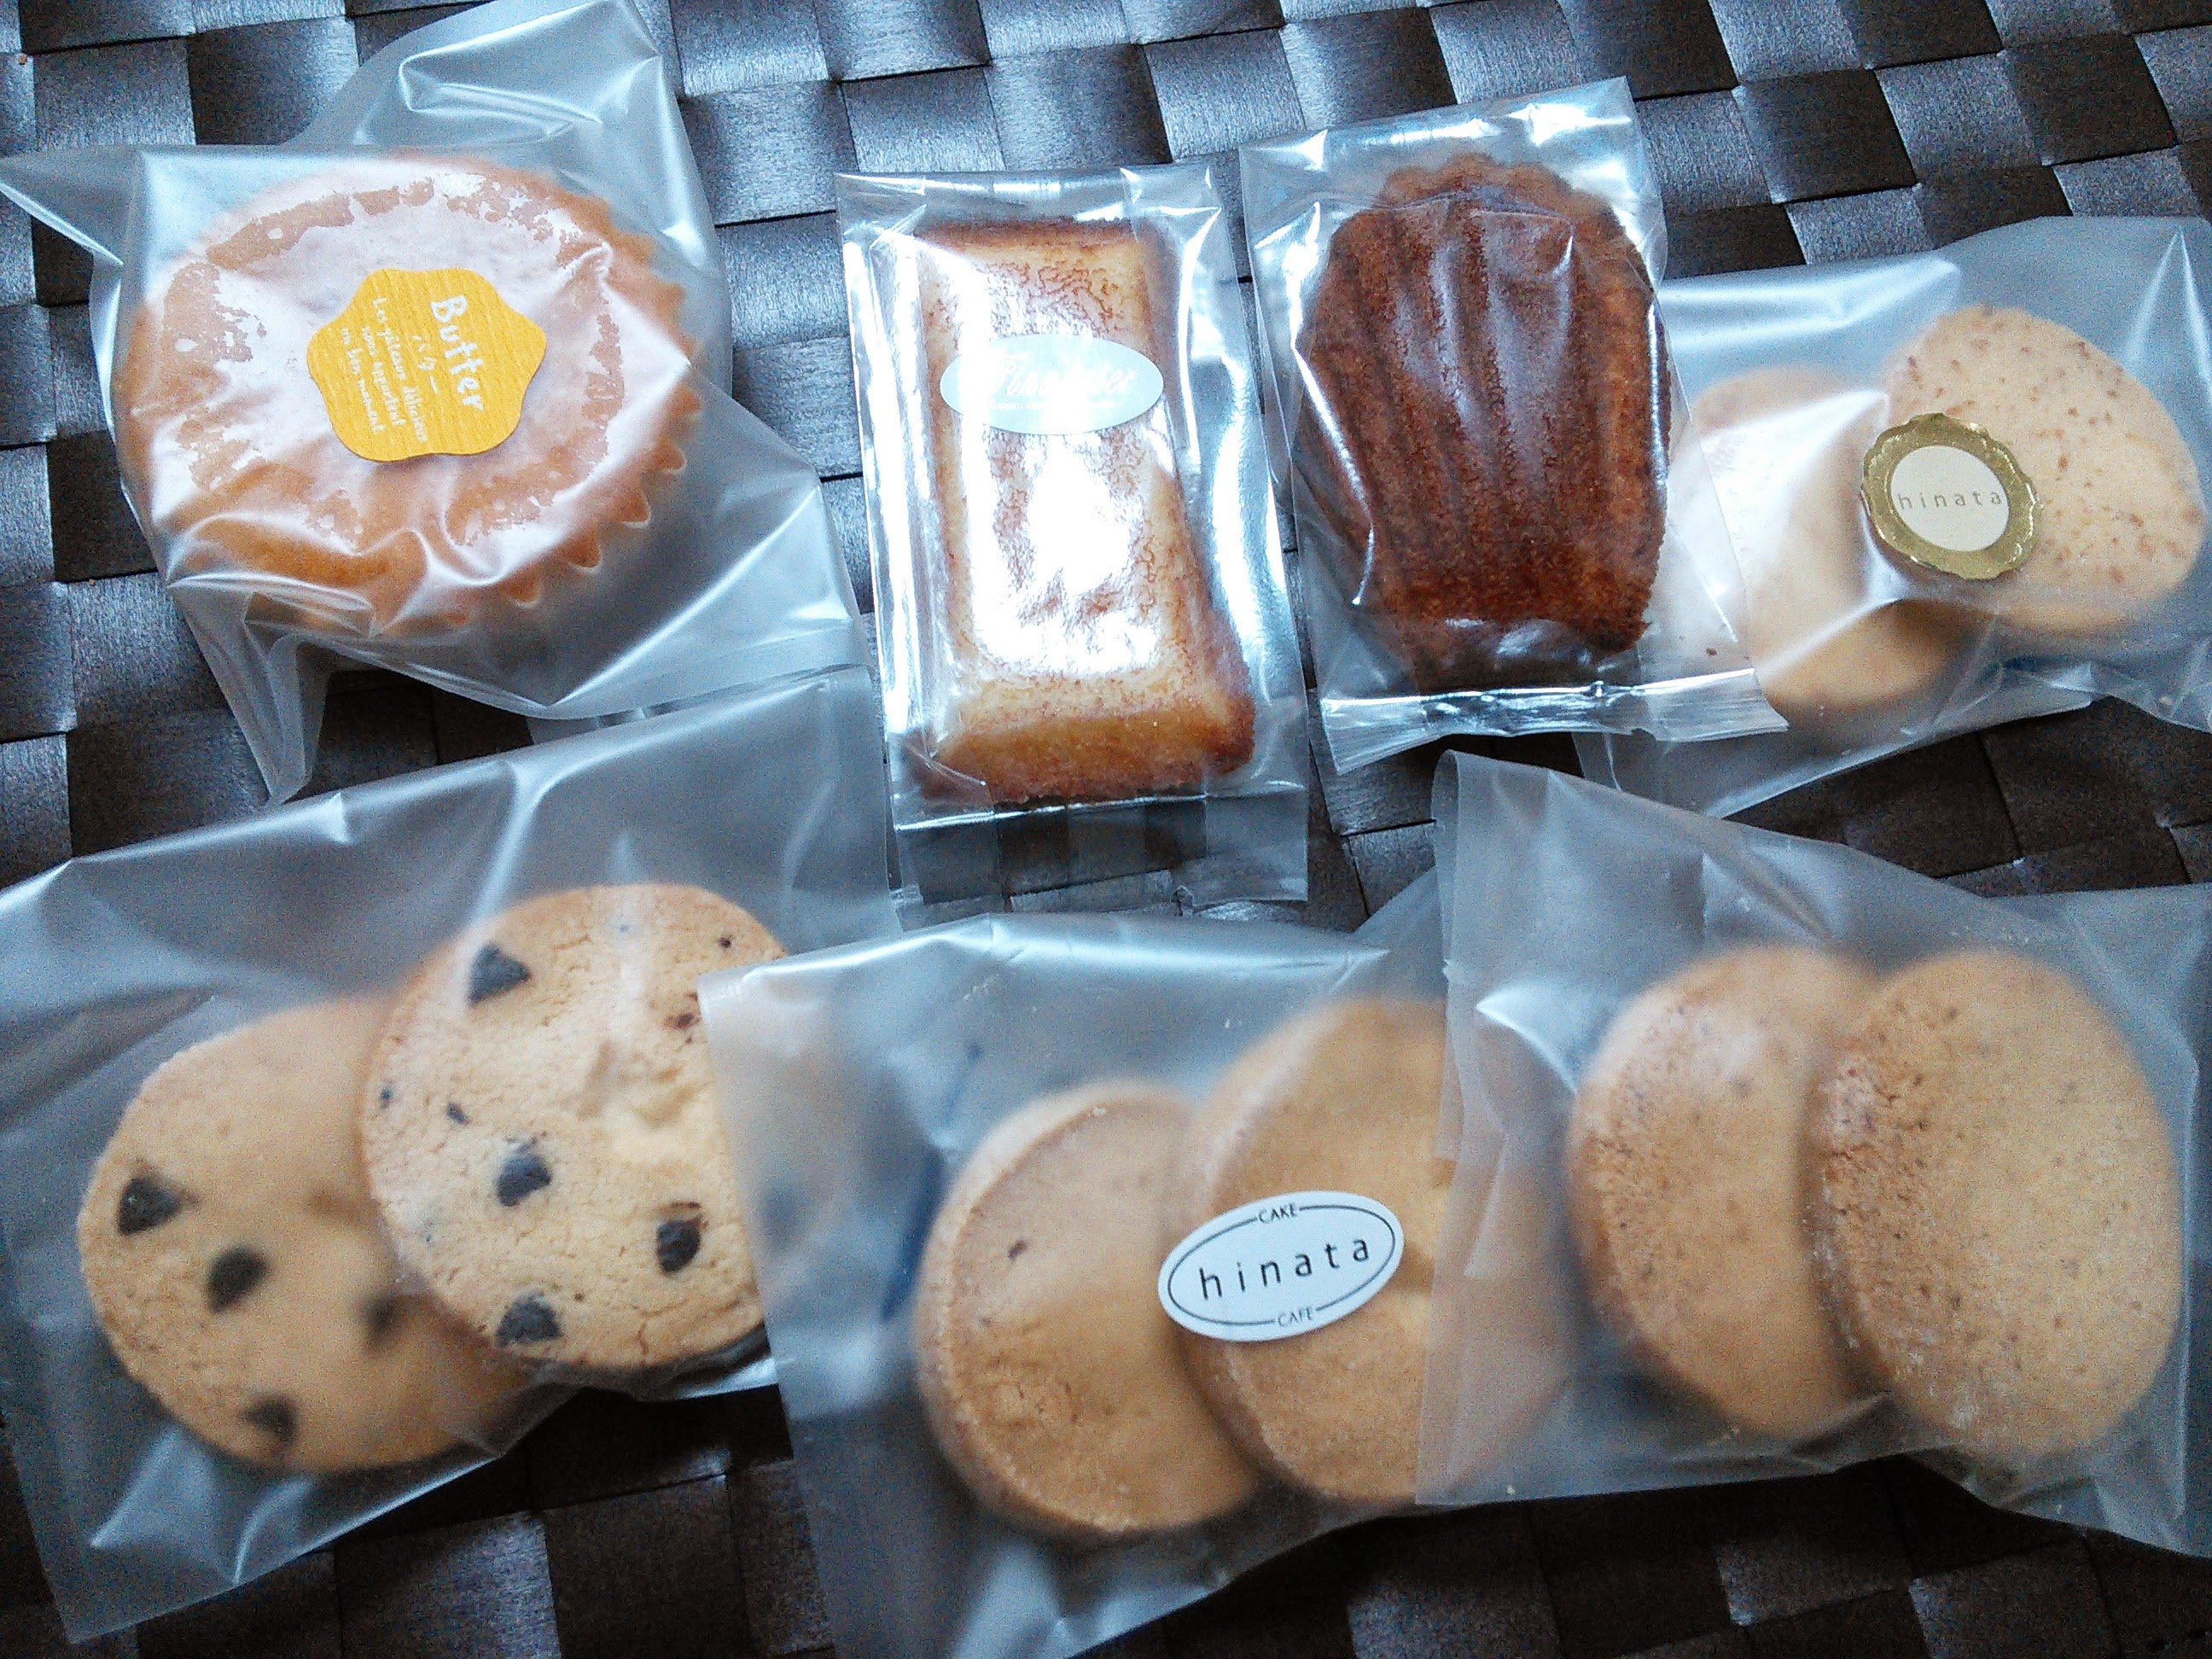 ケーキ ヒナタ 焼き菓子詰め合わせ パッケージが可愛いスウィーツショップ 大阪 奈良グルメのブログ ミシュランごっこ